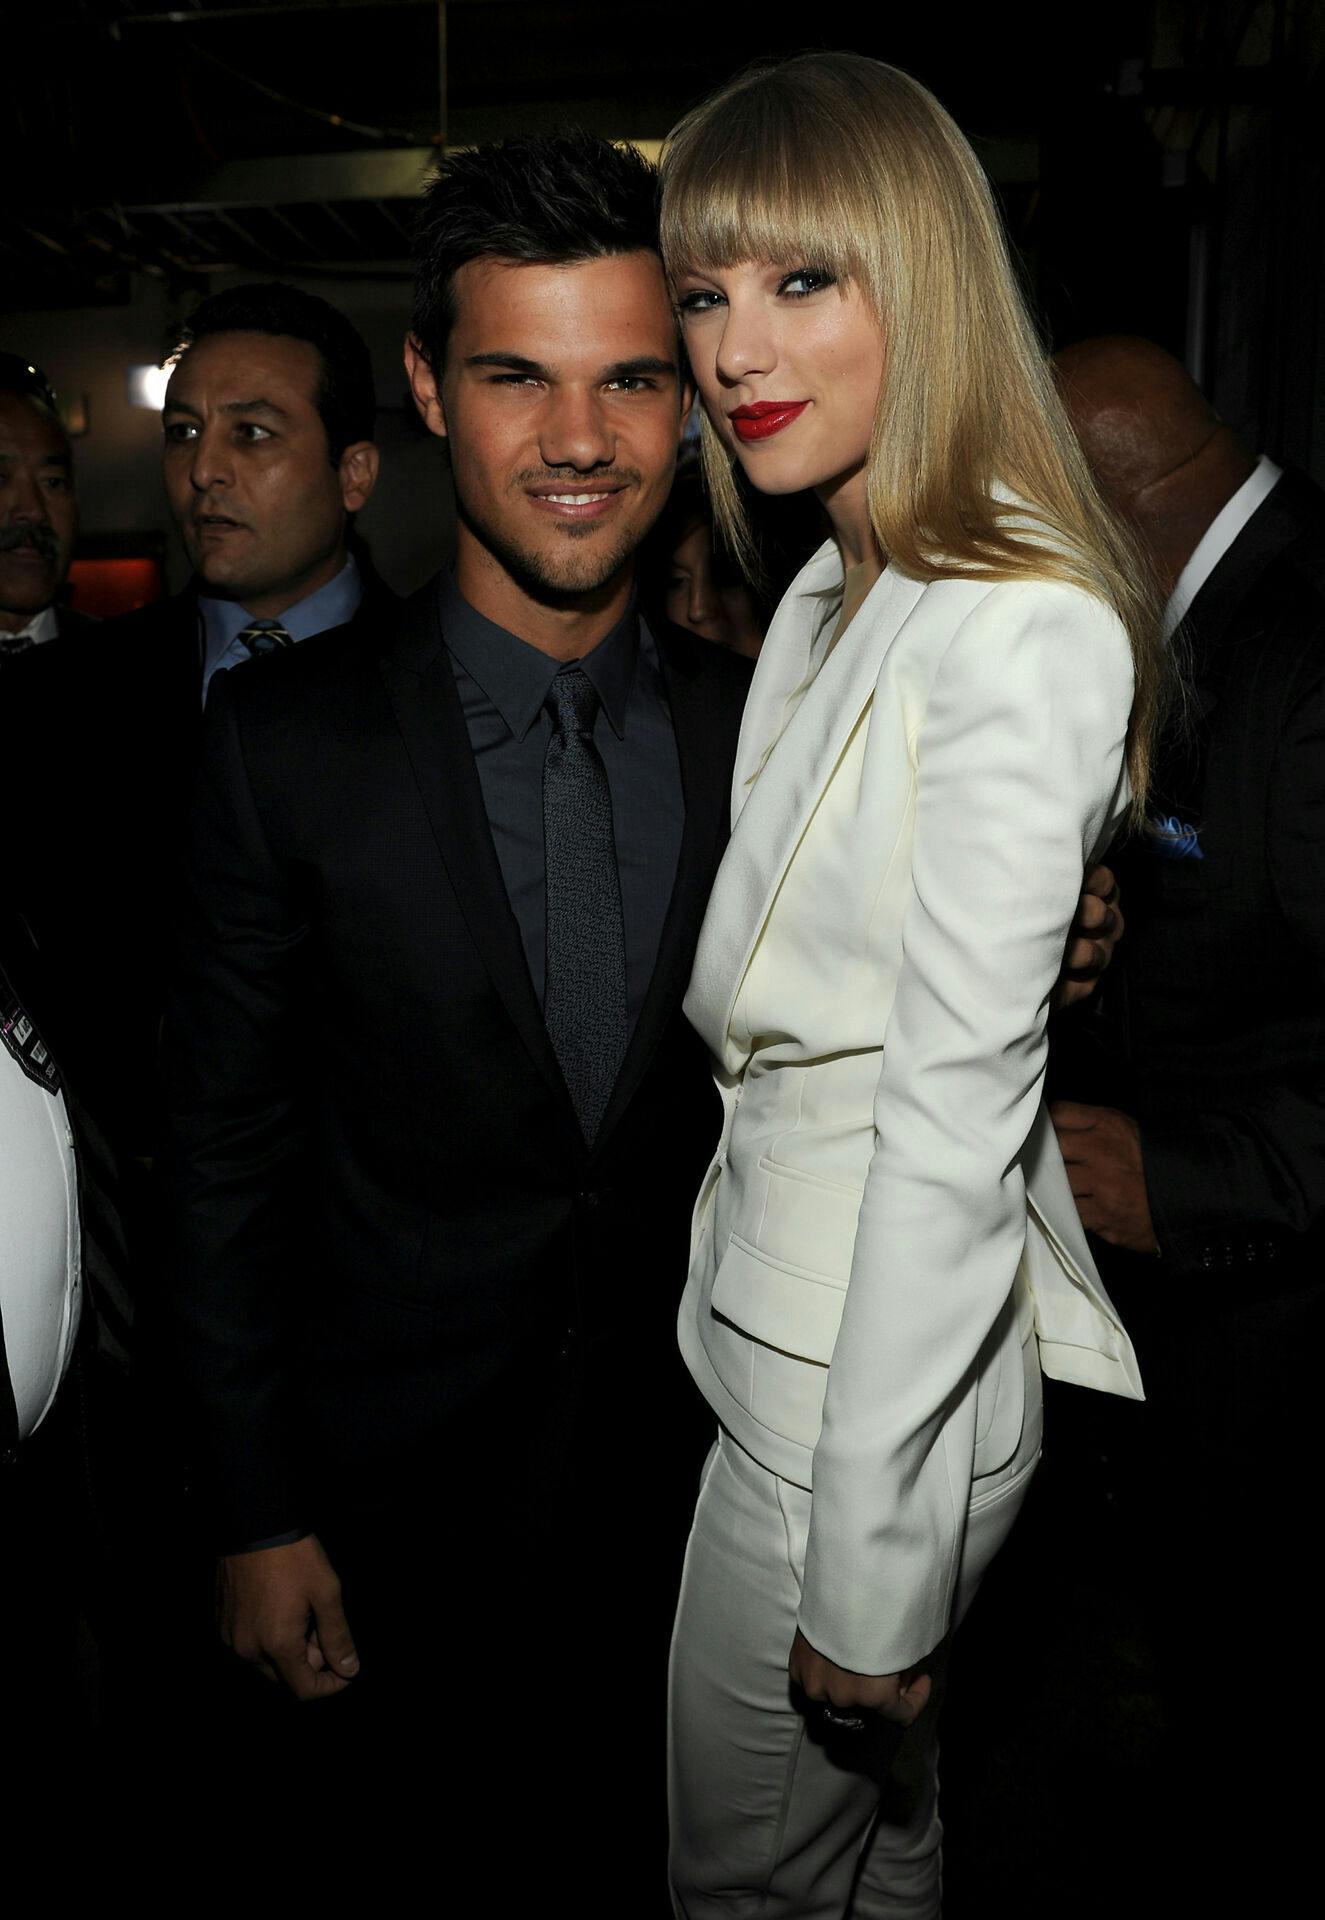 Taylor Lautner og Taylor Swift datede i 2009, men der er ingen dårlig stemning mellem de to. Her fotograferet backstage til MTV Video Music Awards i 2012.